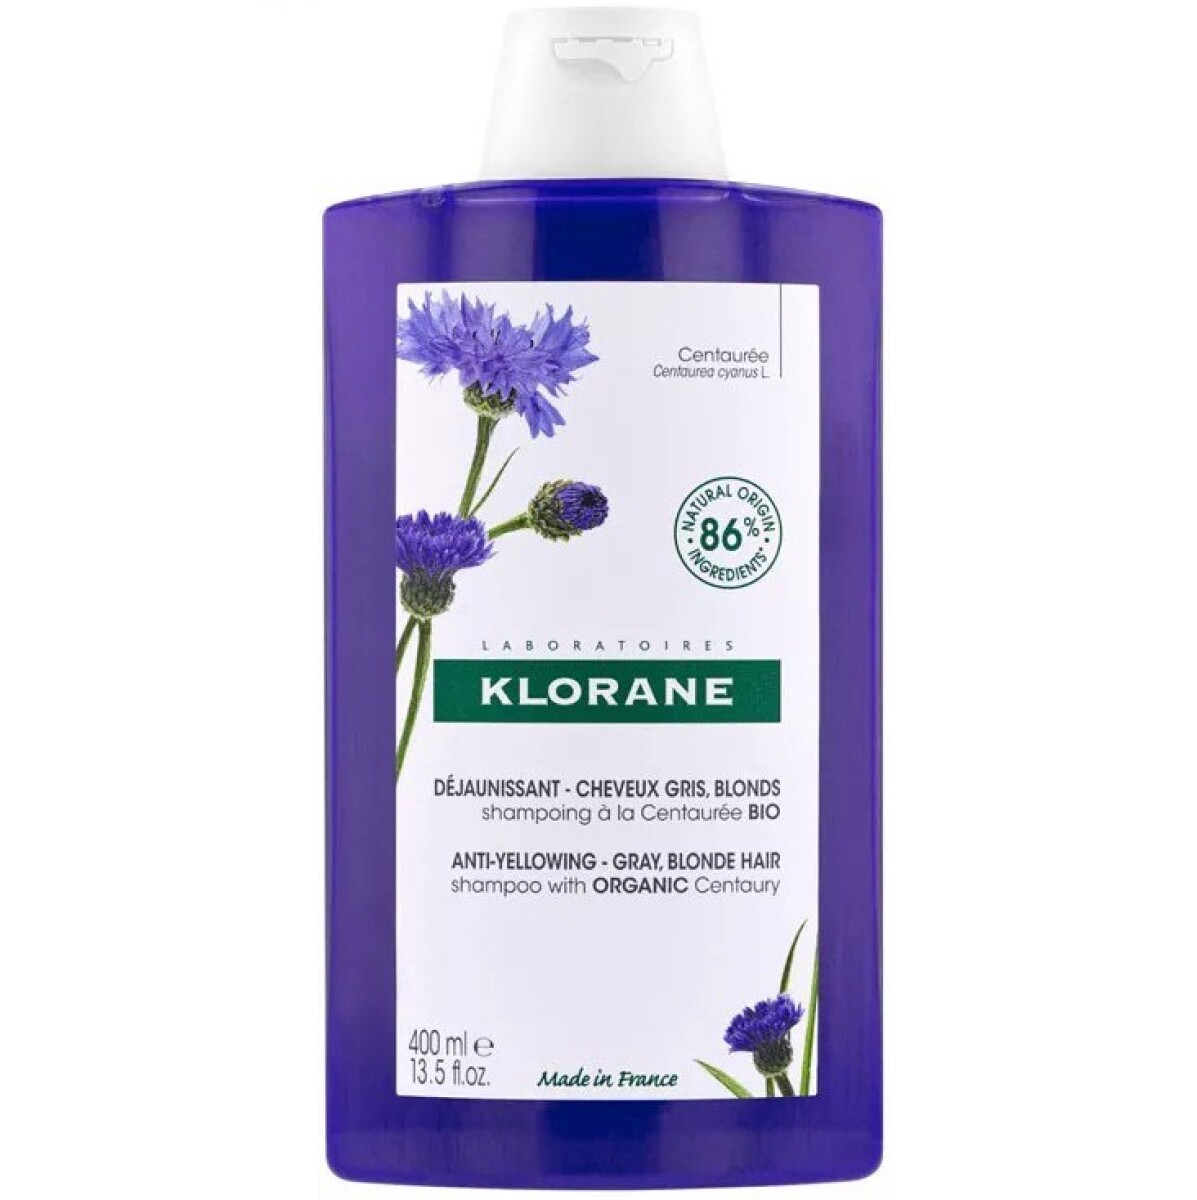 Shampoo Klorane Centaurea 400 Ml. 